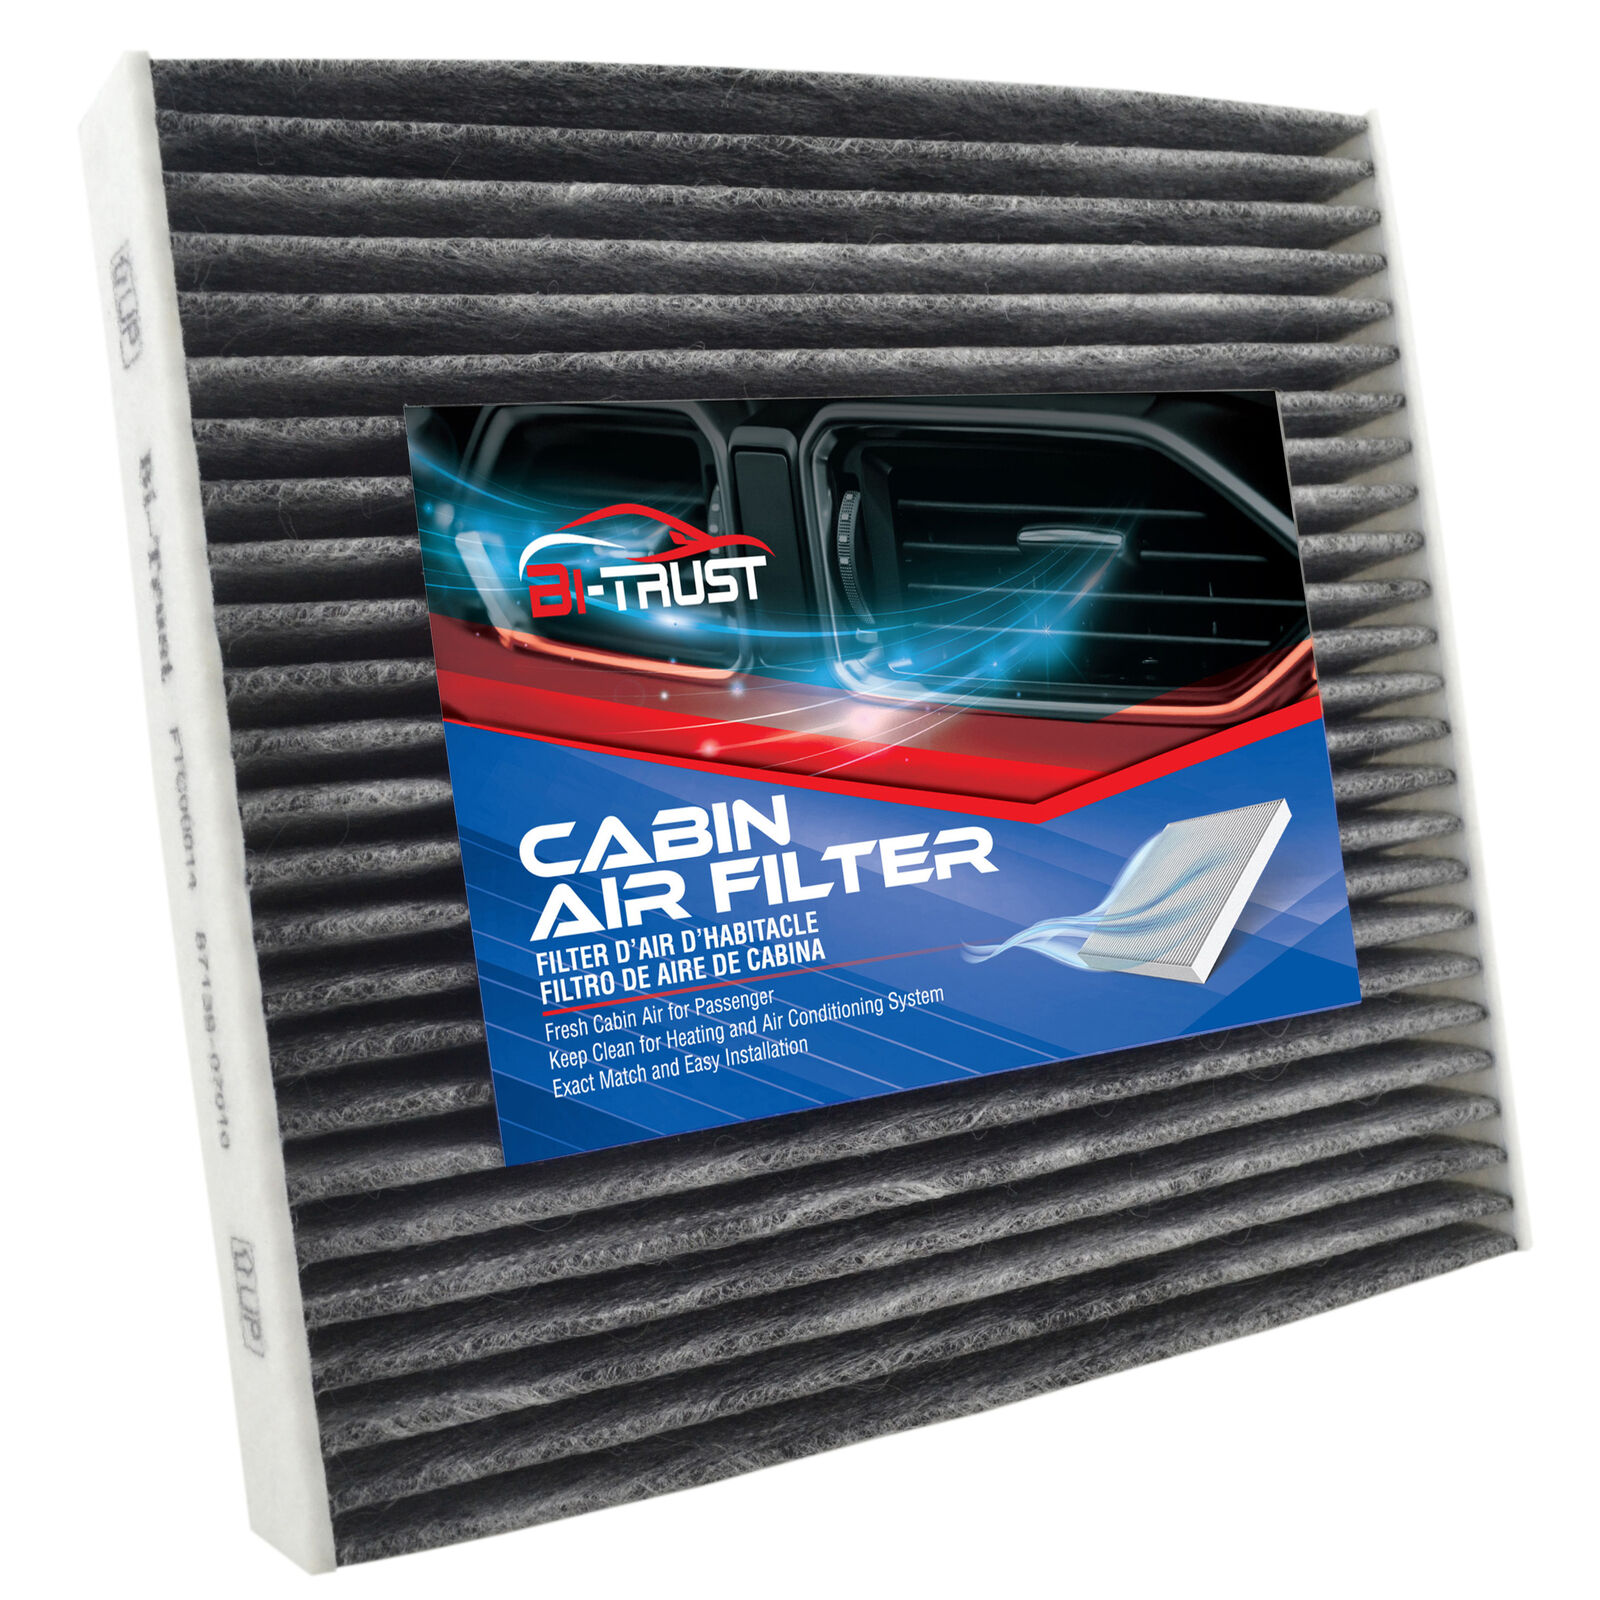 Cabin Air Filter for Lexus Nx300 Nx200T LX570 LS600H LS460 LFA IS350 IS250 IS F